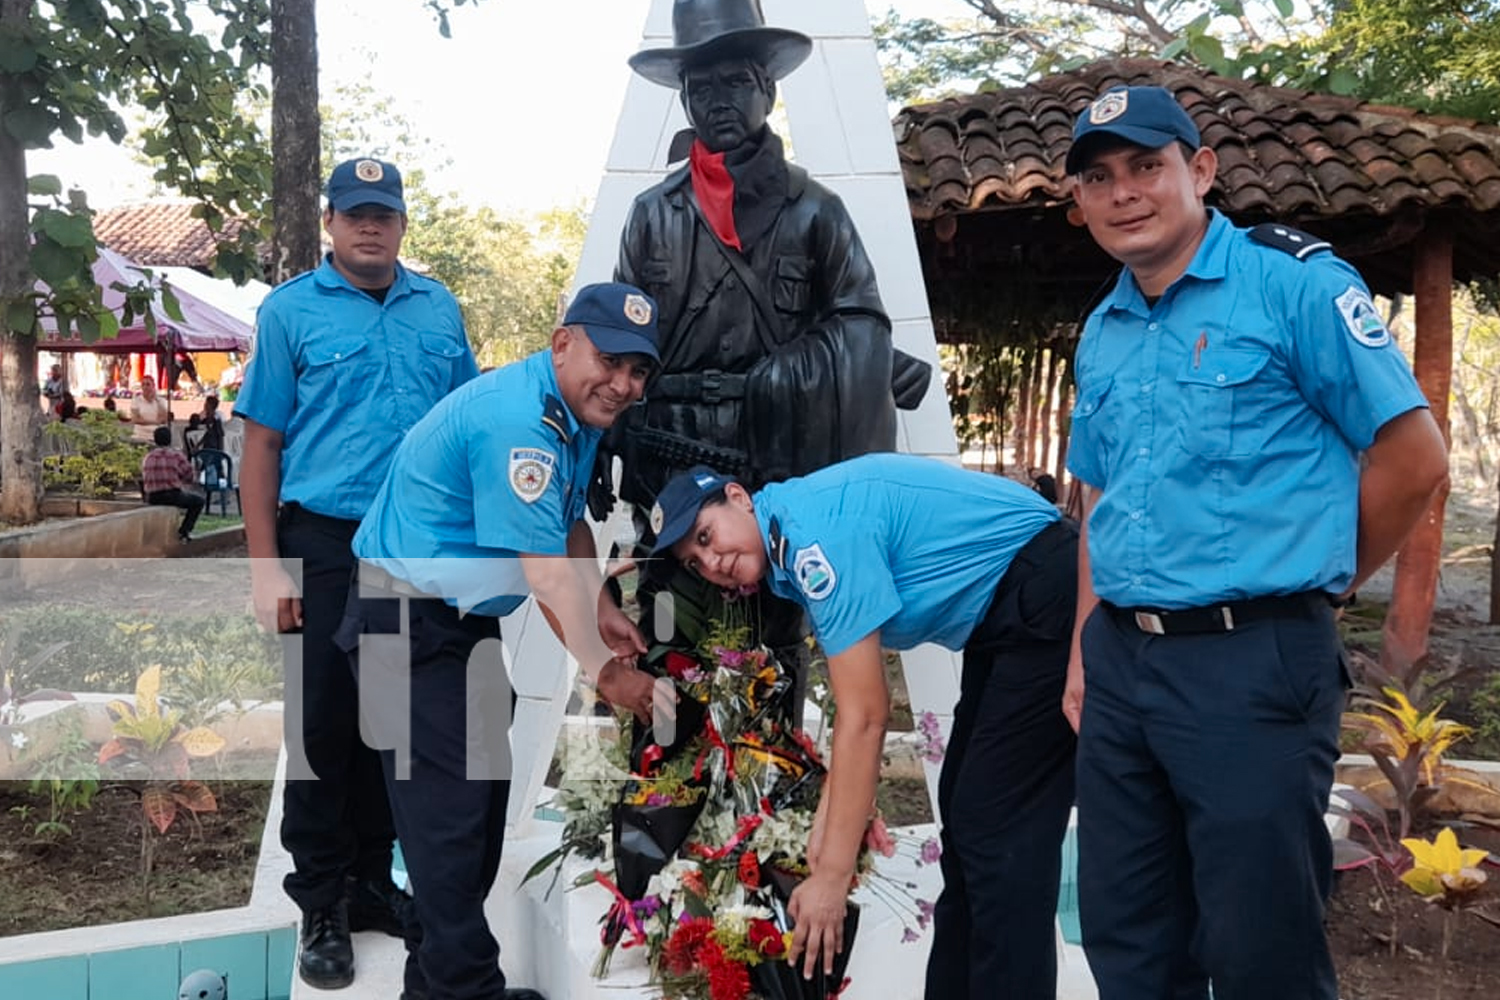 Foto: Nicaragua conmemoró el natalicio de Sandino "General de hombres y mujeres libres"/TN8